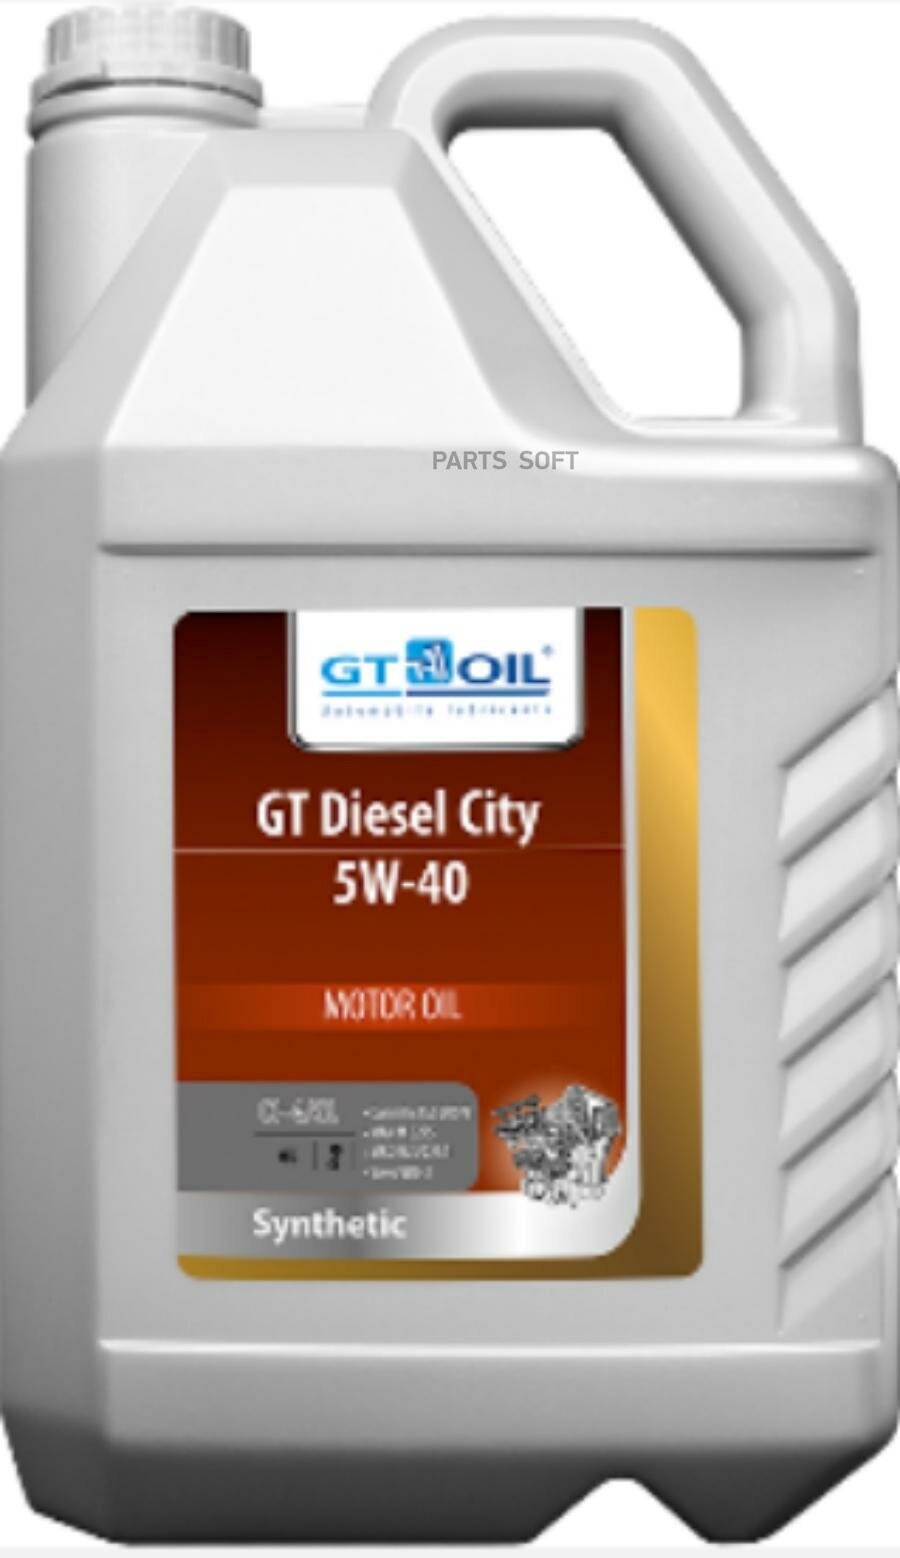 Масло мотороное синтетическое универсальное GT Diesel City, SAE 5W-40, API CI-4/SL, 6 л GT OIL / арт. 8809059408278 - (1 шт)